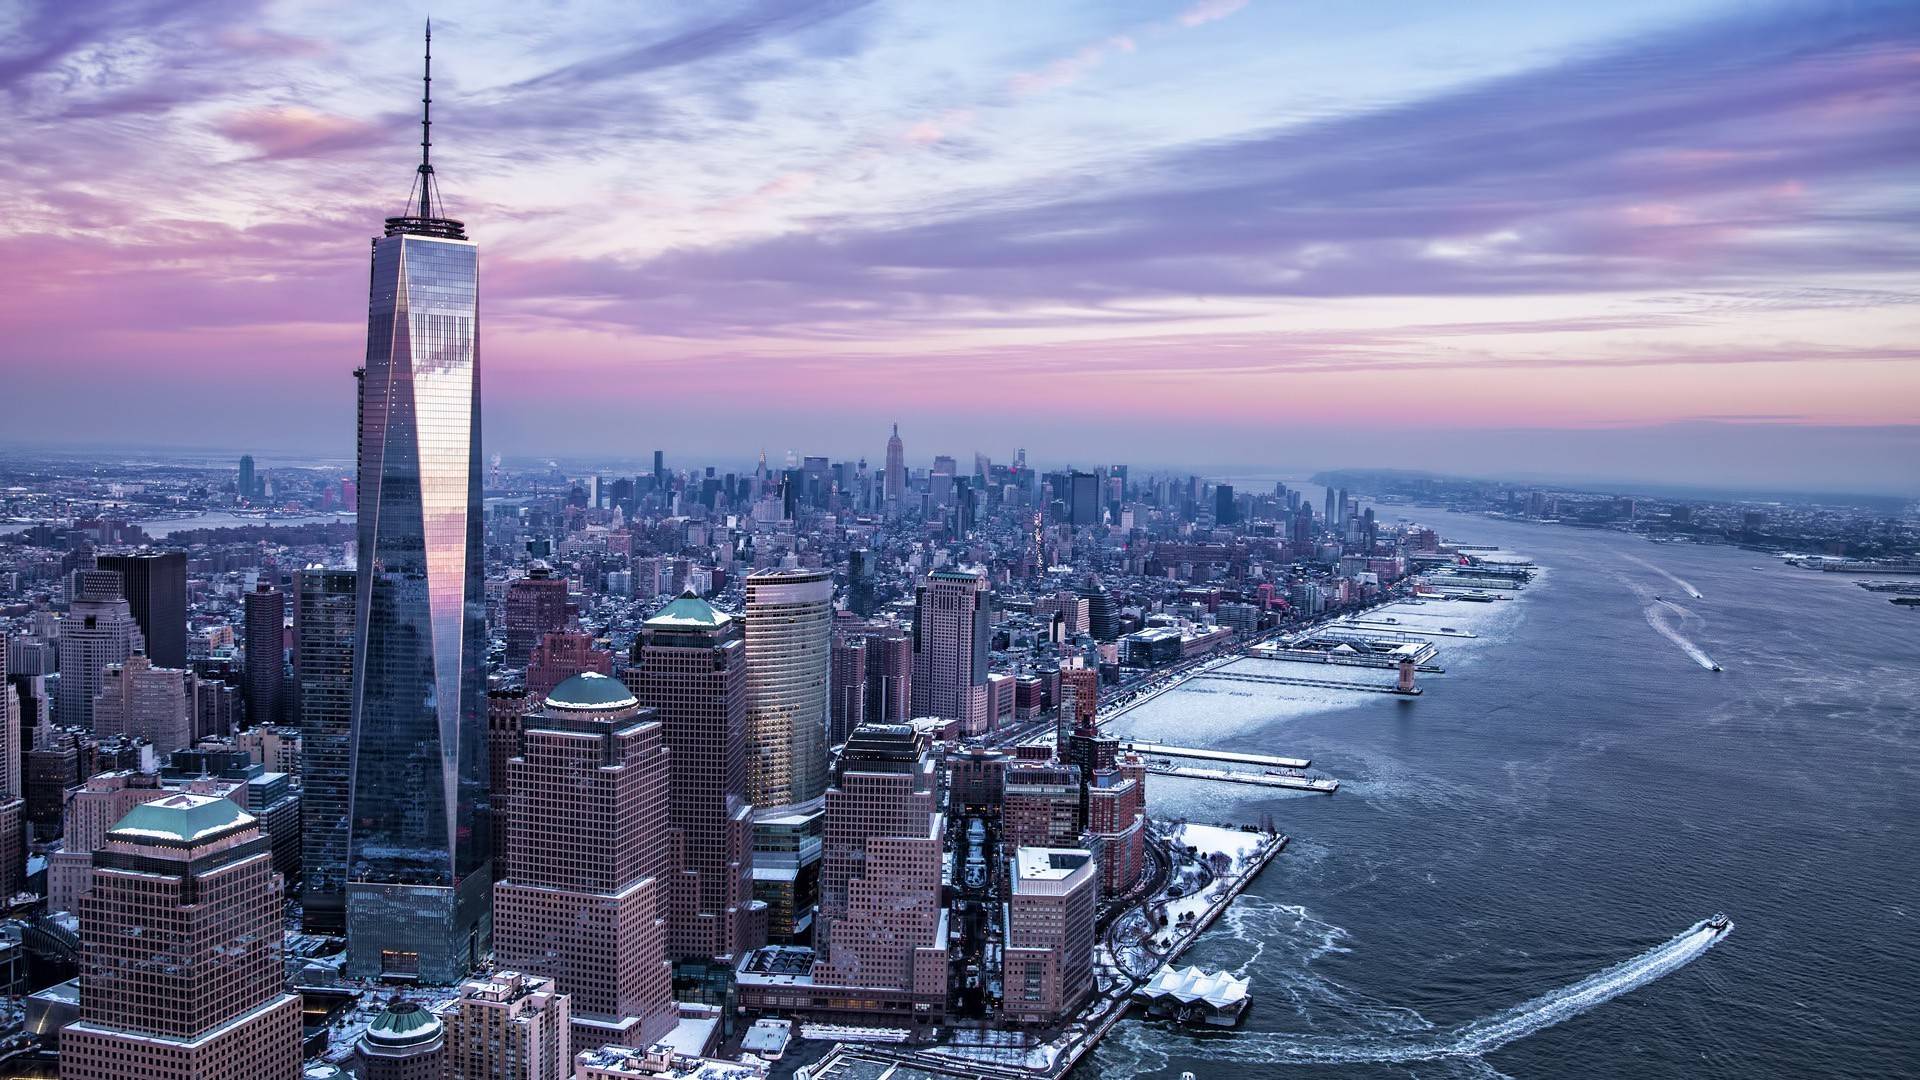 New York observation decks in winter